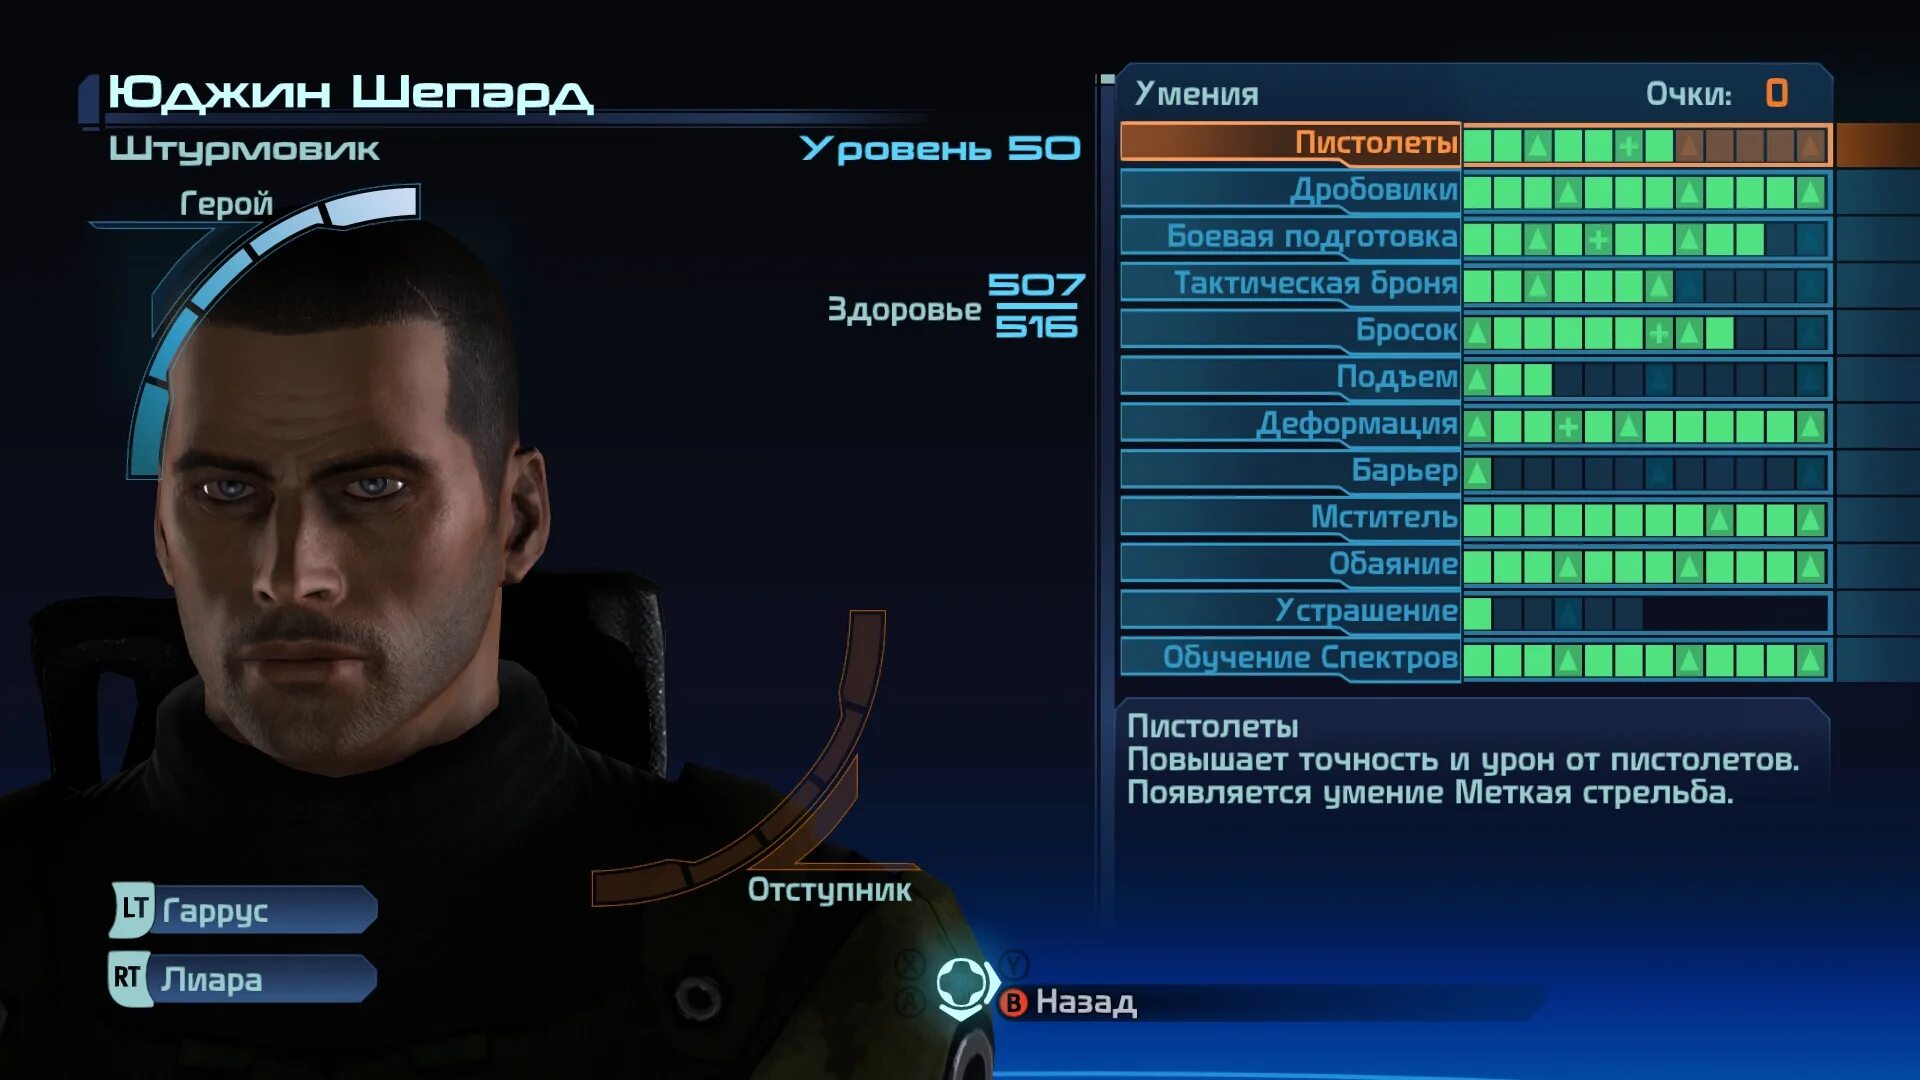 Мужские персонажи были украдены статисткой 31. Таблица масс эффект 1. Mass Effect код внешности Шепарда мужчины. Mass Effect коды внешности мужчина. Чит коды для масс эффект 1.